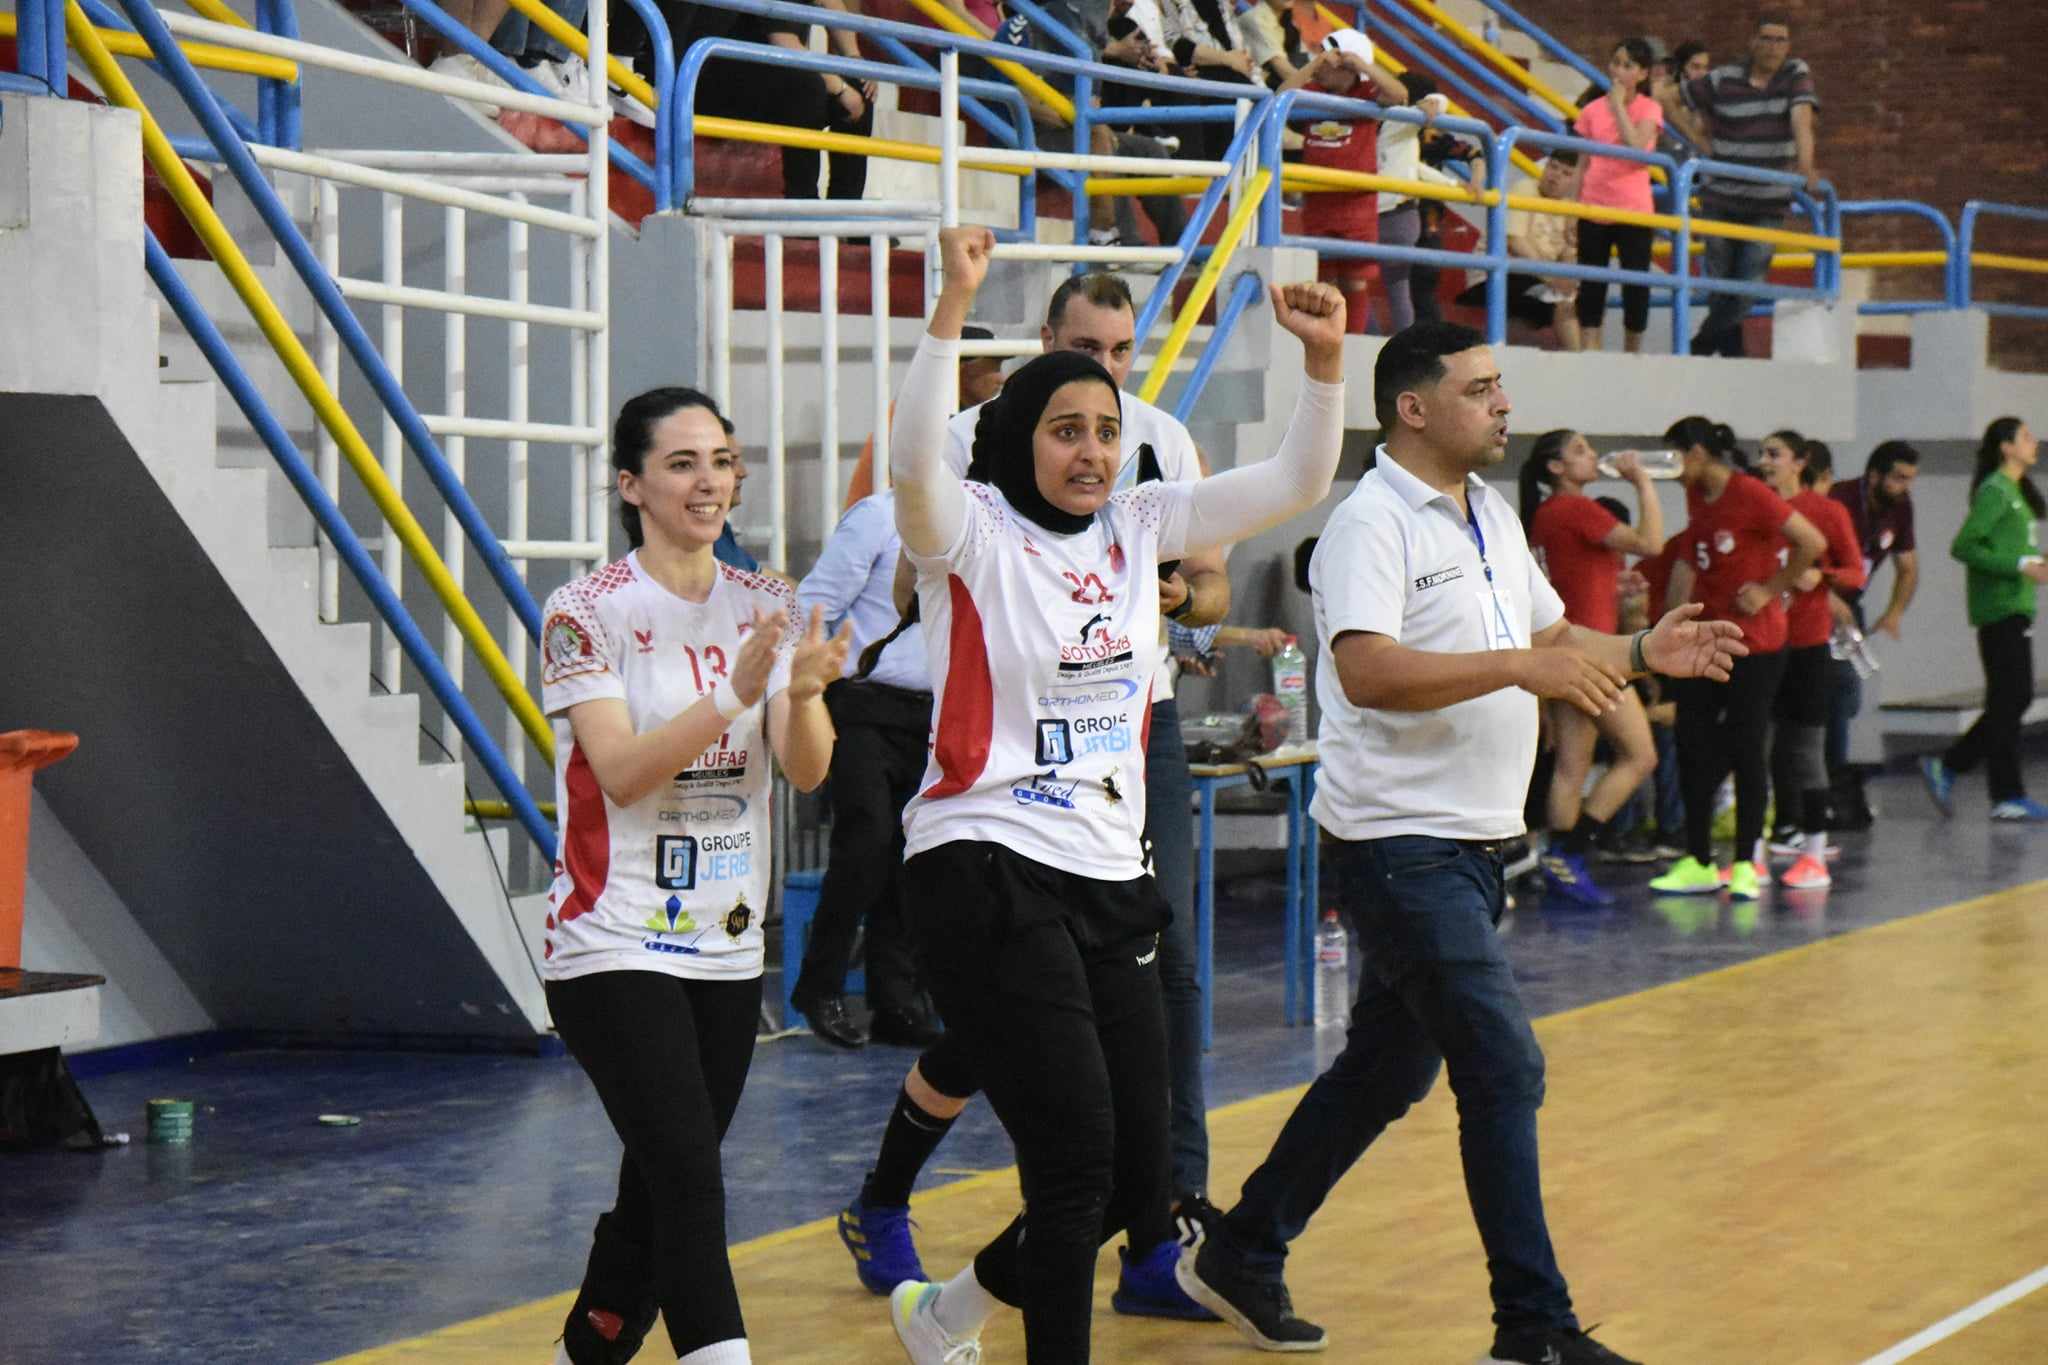 مباراة حاسمة في كرة اليد النسائية: من سيتوج ببطولة تونس؟